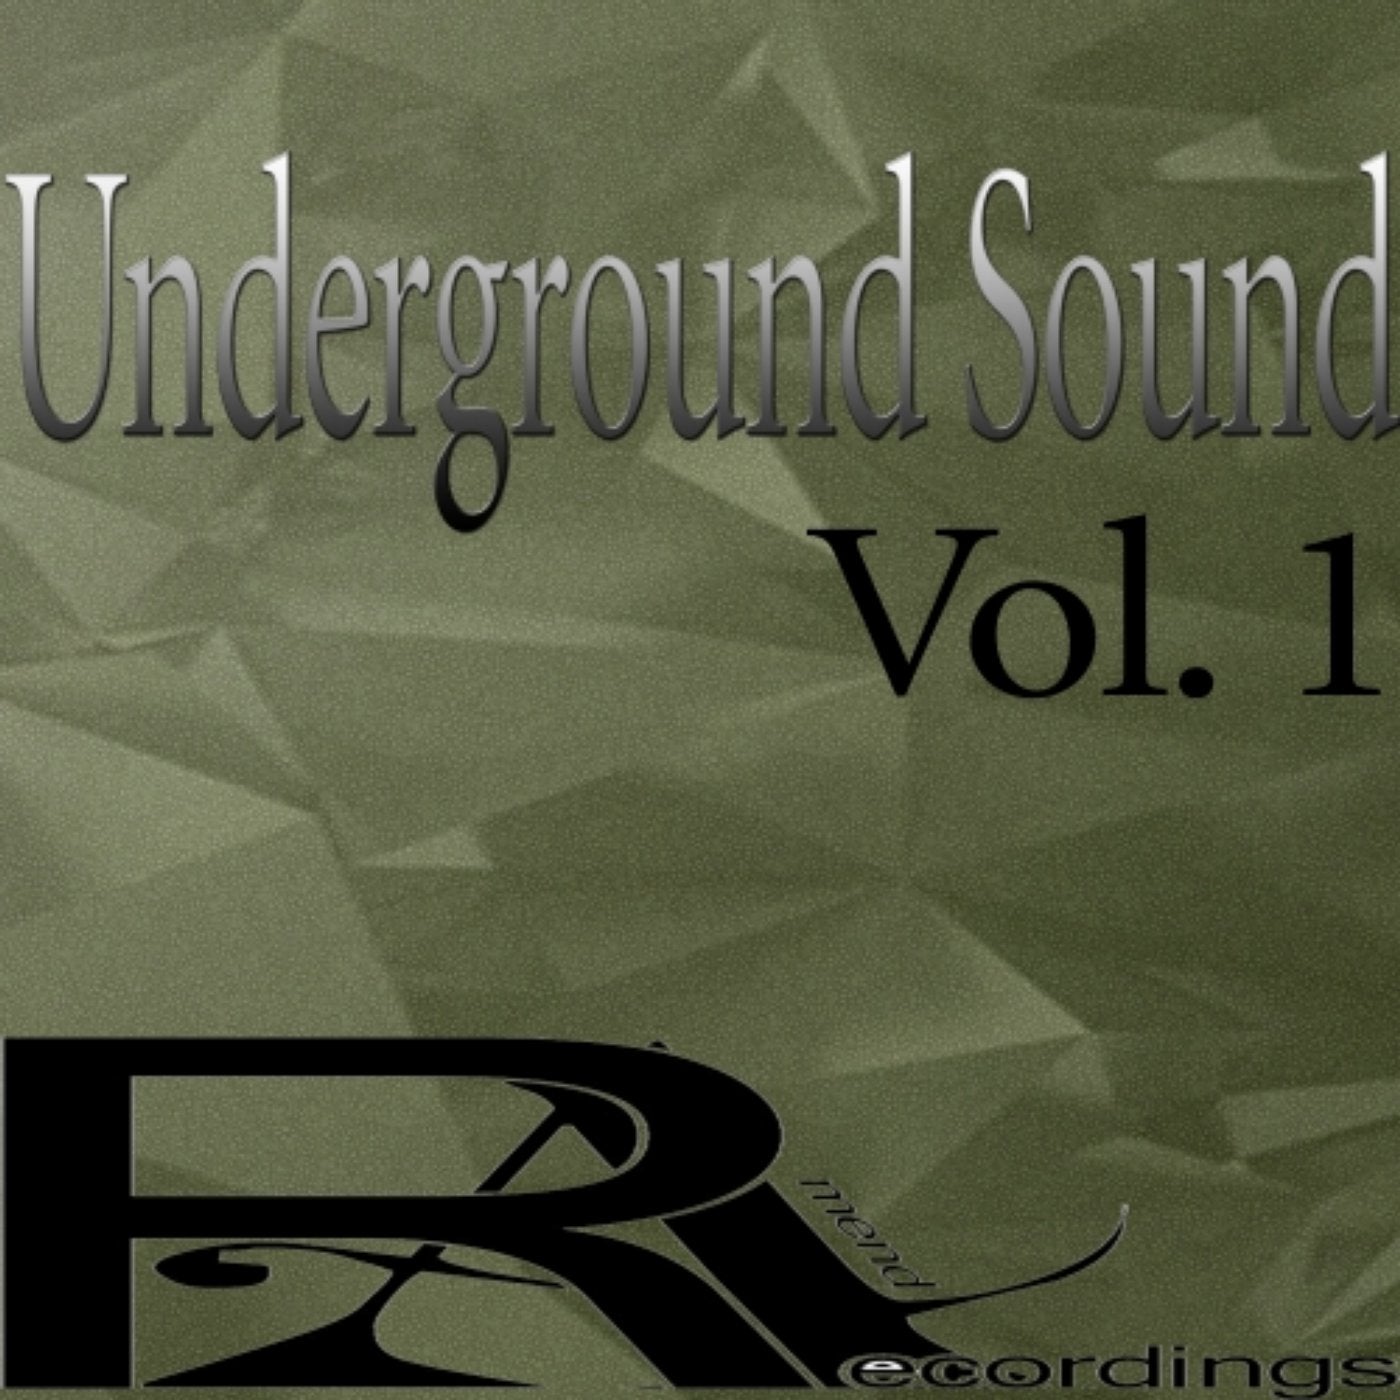 Underground Sound Vol. 1